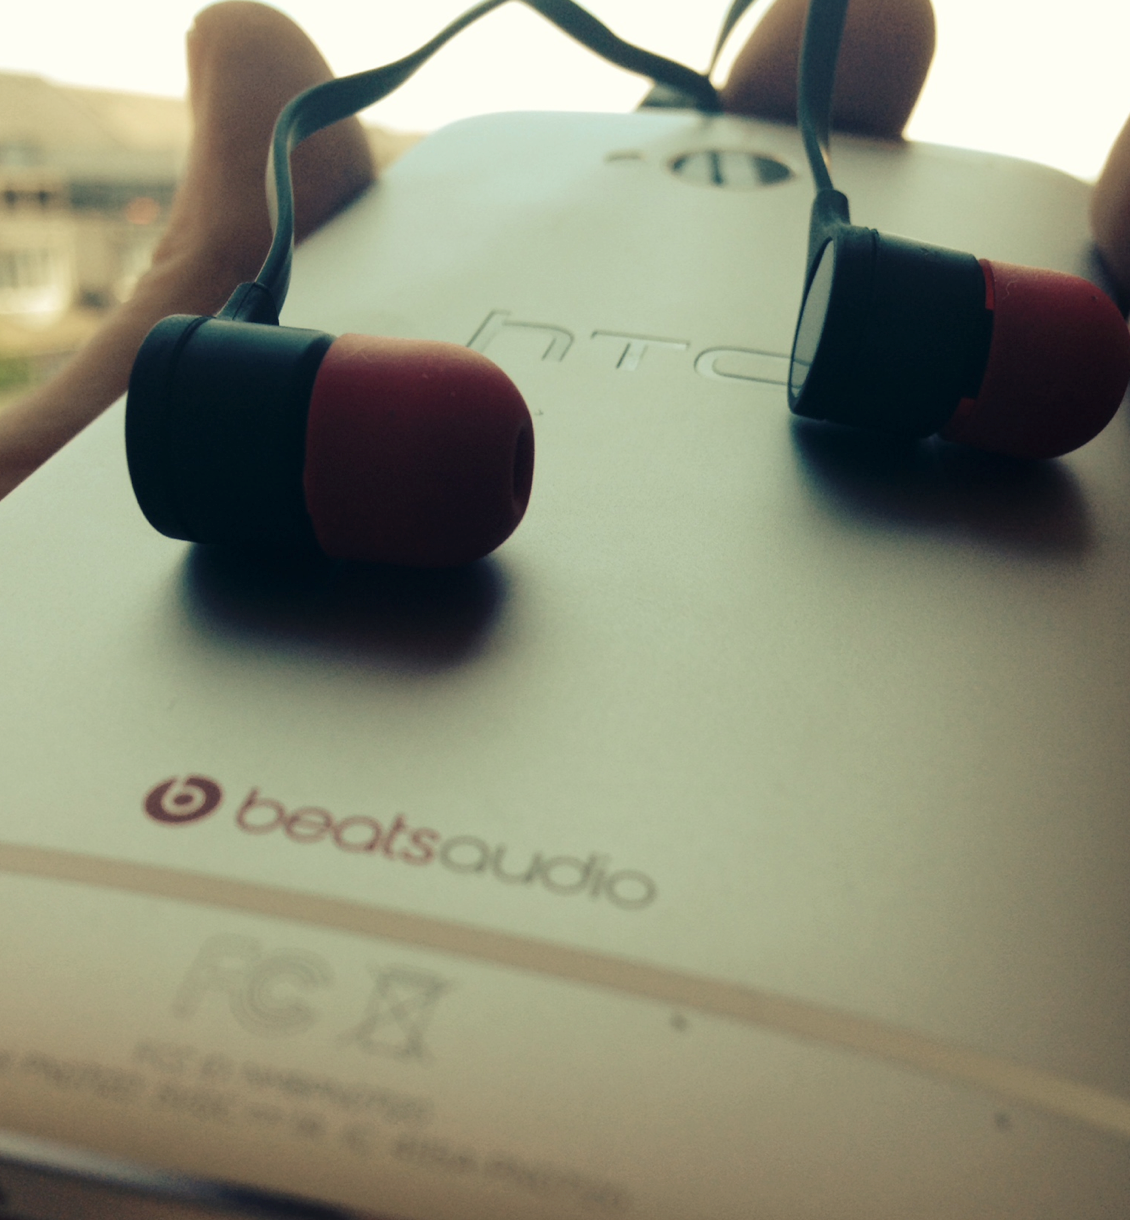 HTC-One-GPE-BeatsAudio-01